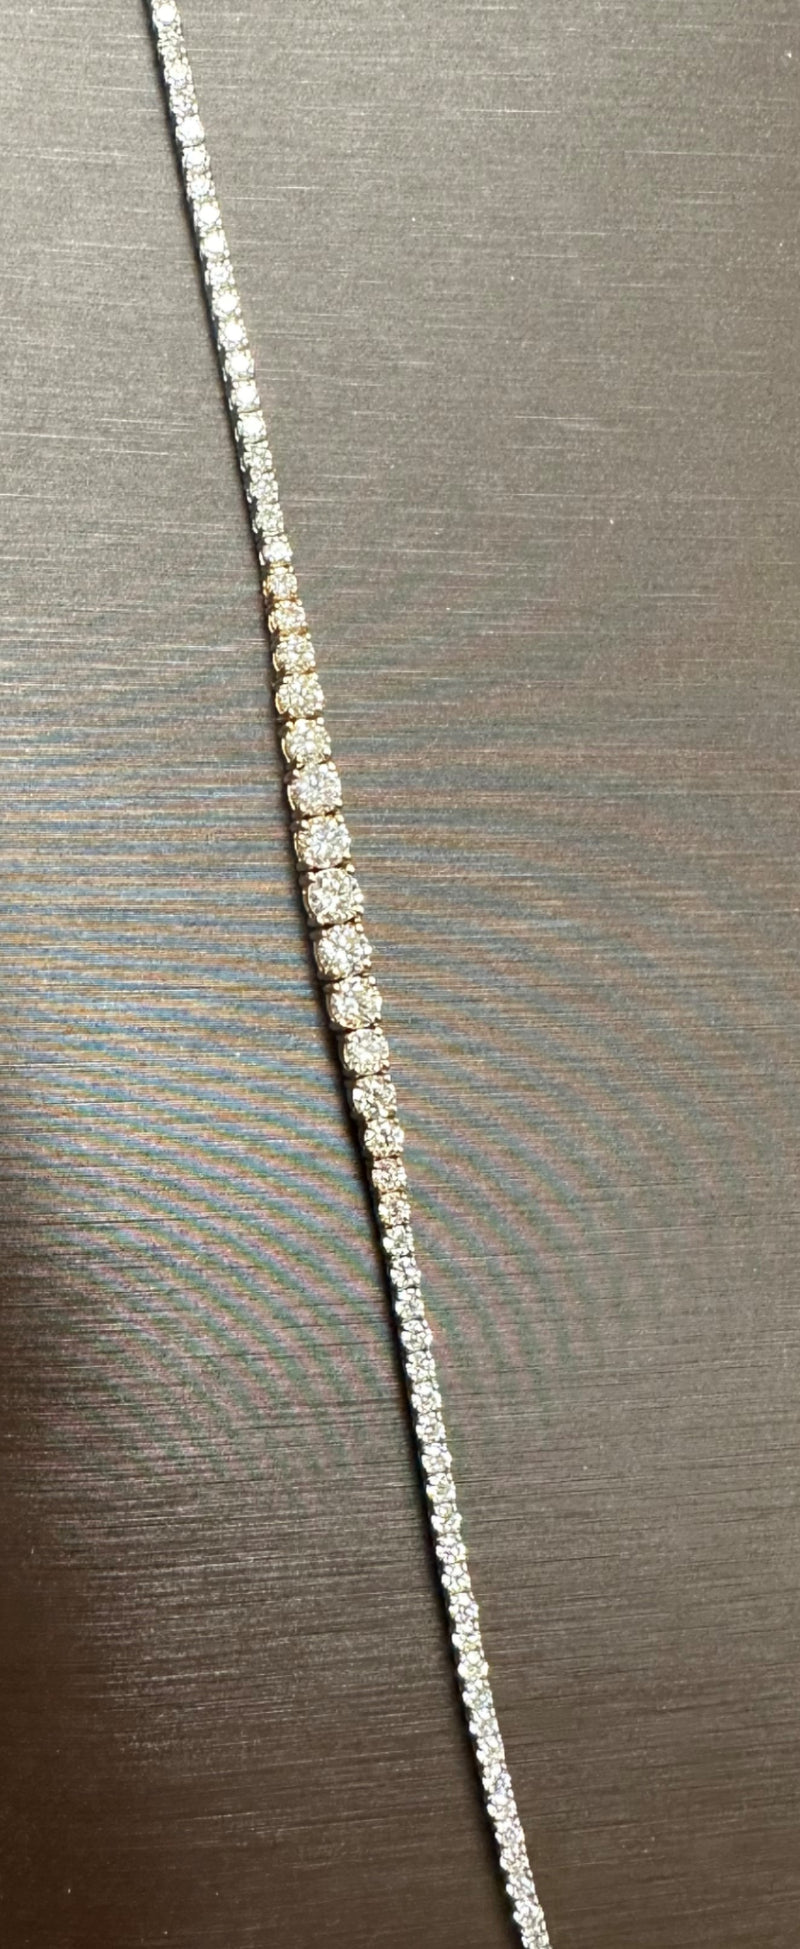 Lab Grown Diamond Necklace